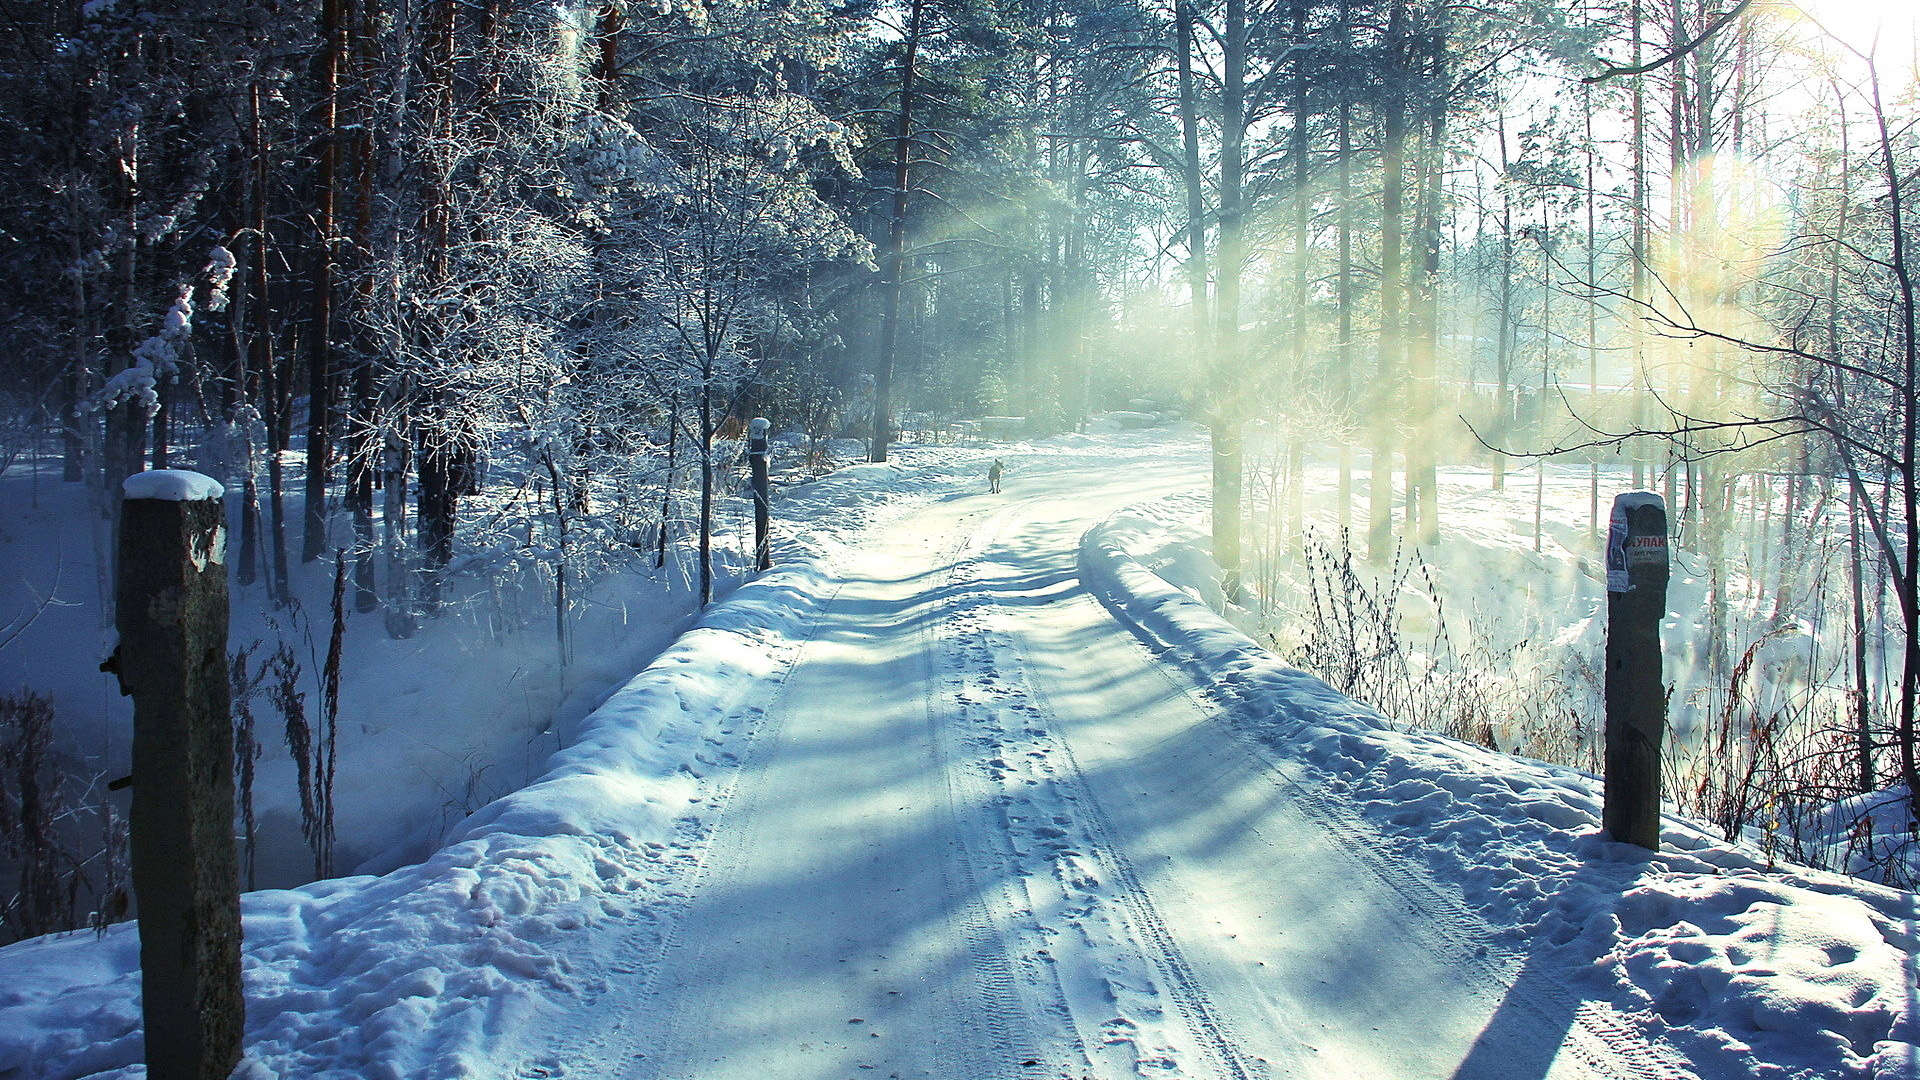 白雪覆盖的林间小路 冬天雪景桌面壁纸